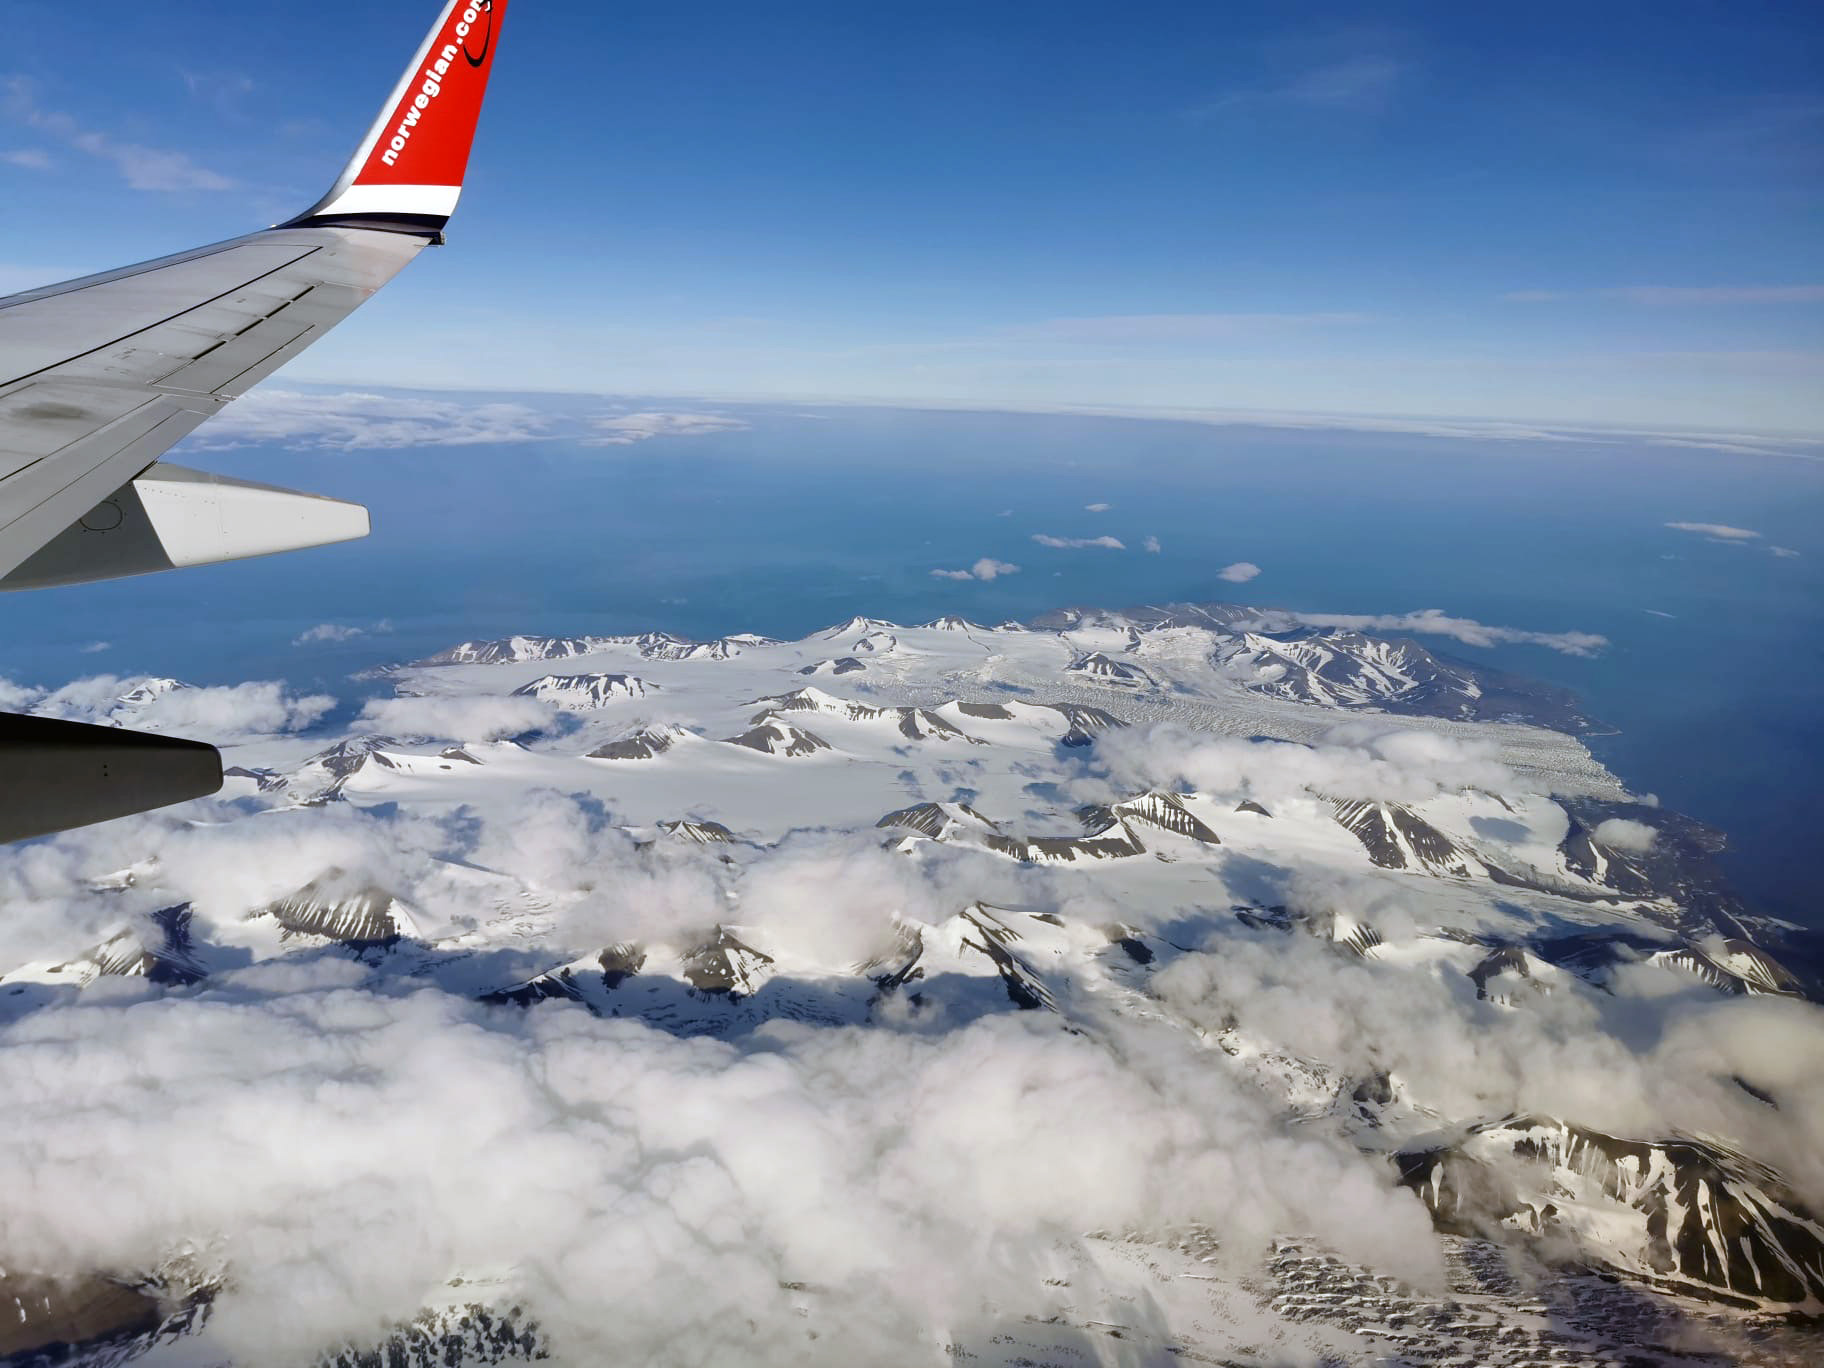 Image taken from plane flying over Svalbard